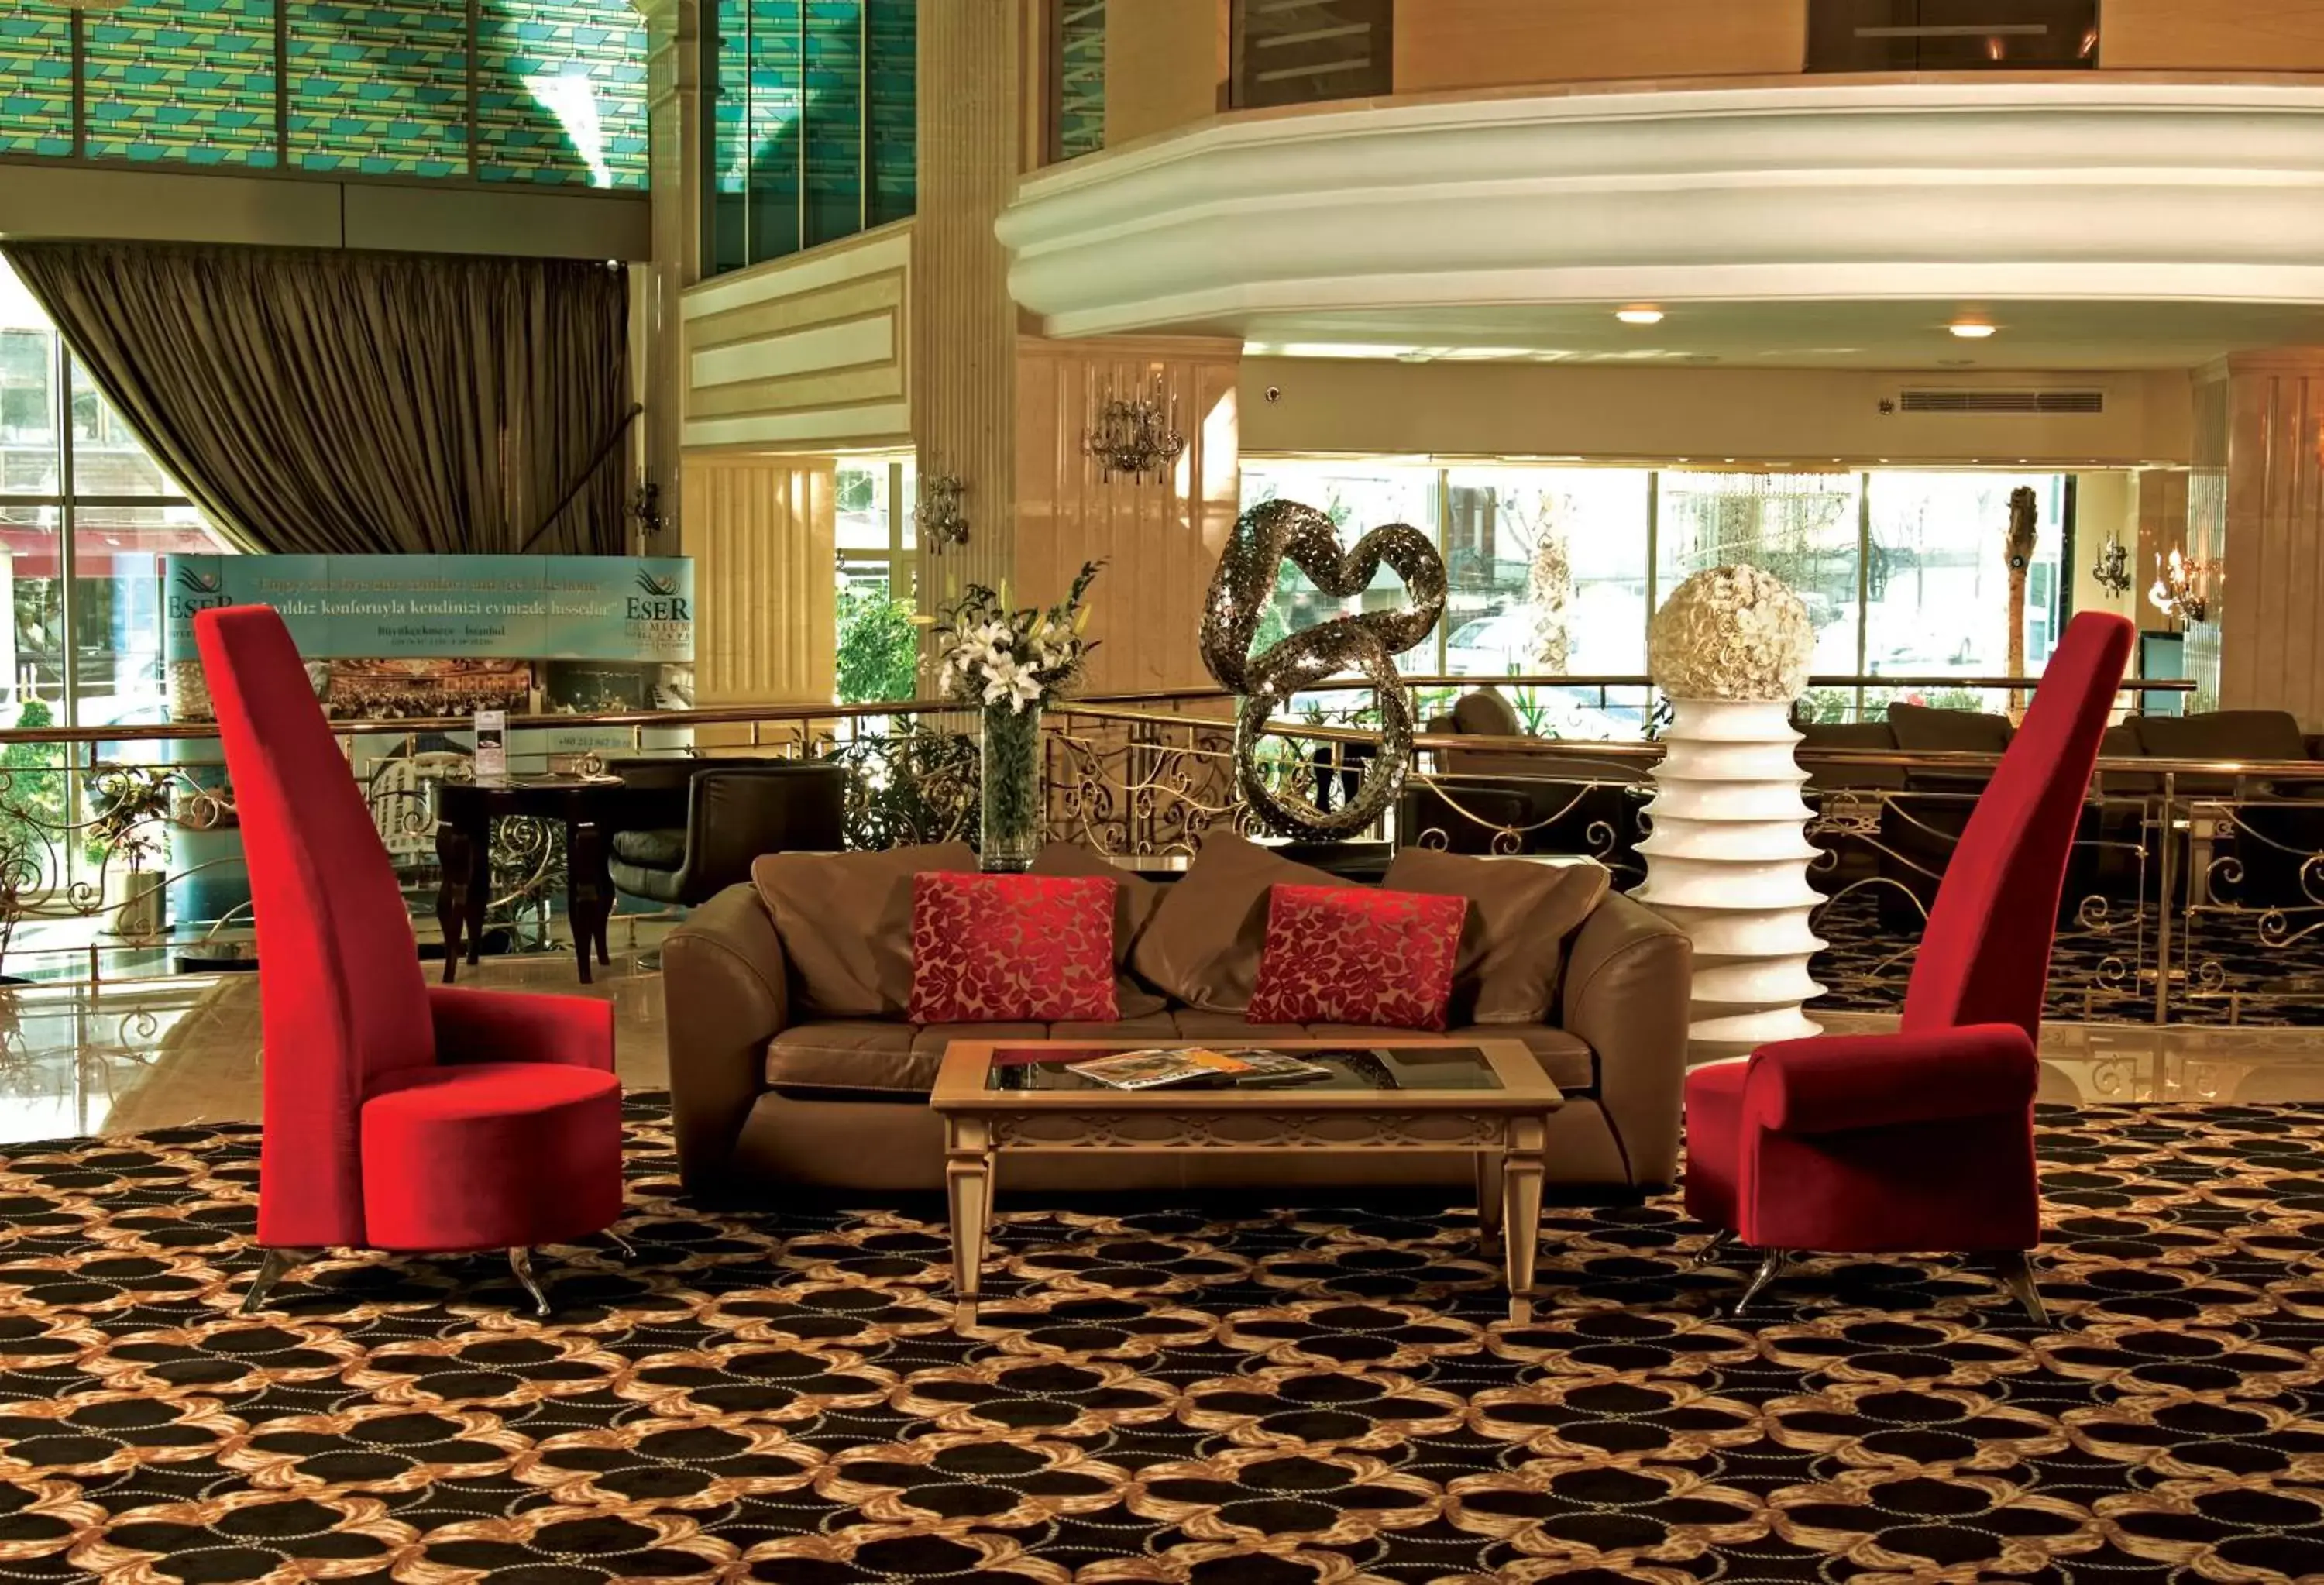 Lobby or reception, Lobby/Reception in Eser Premium Hotel & Spa